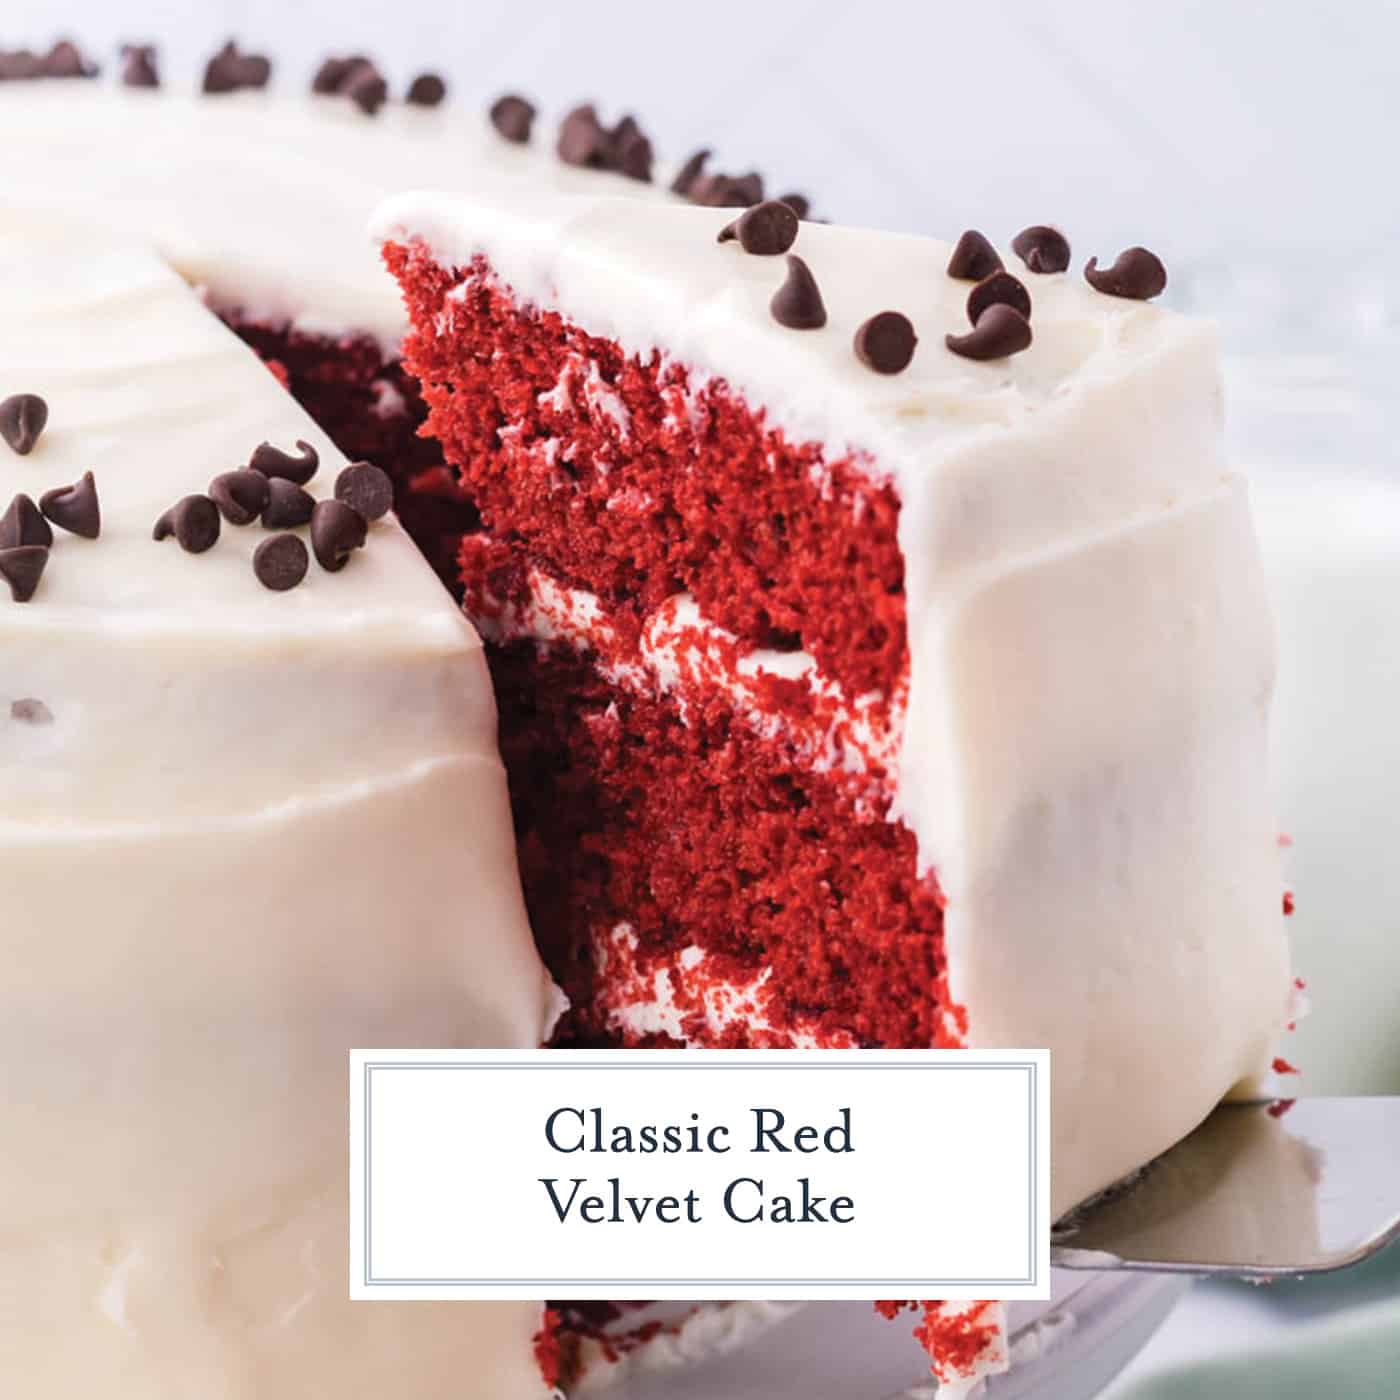 The Best Red Velvet Cake Recipe - YouTube